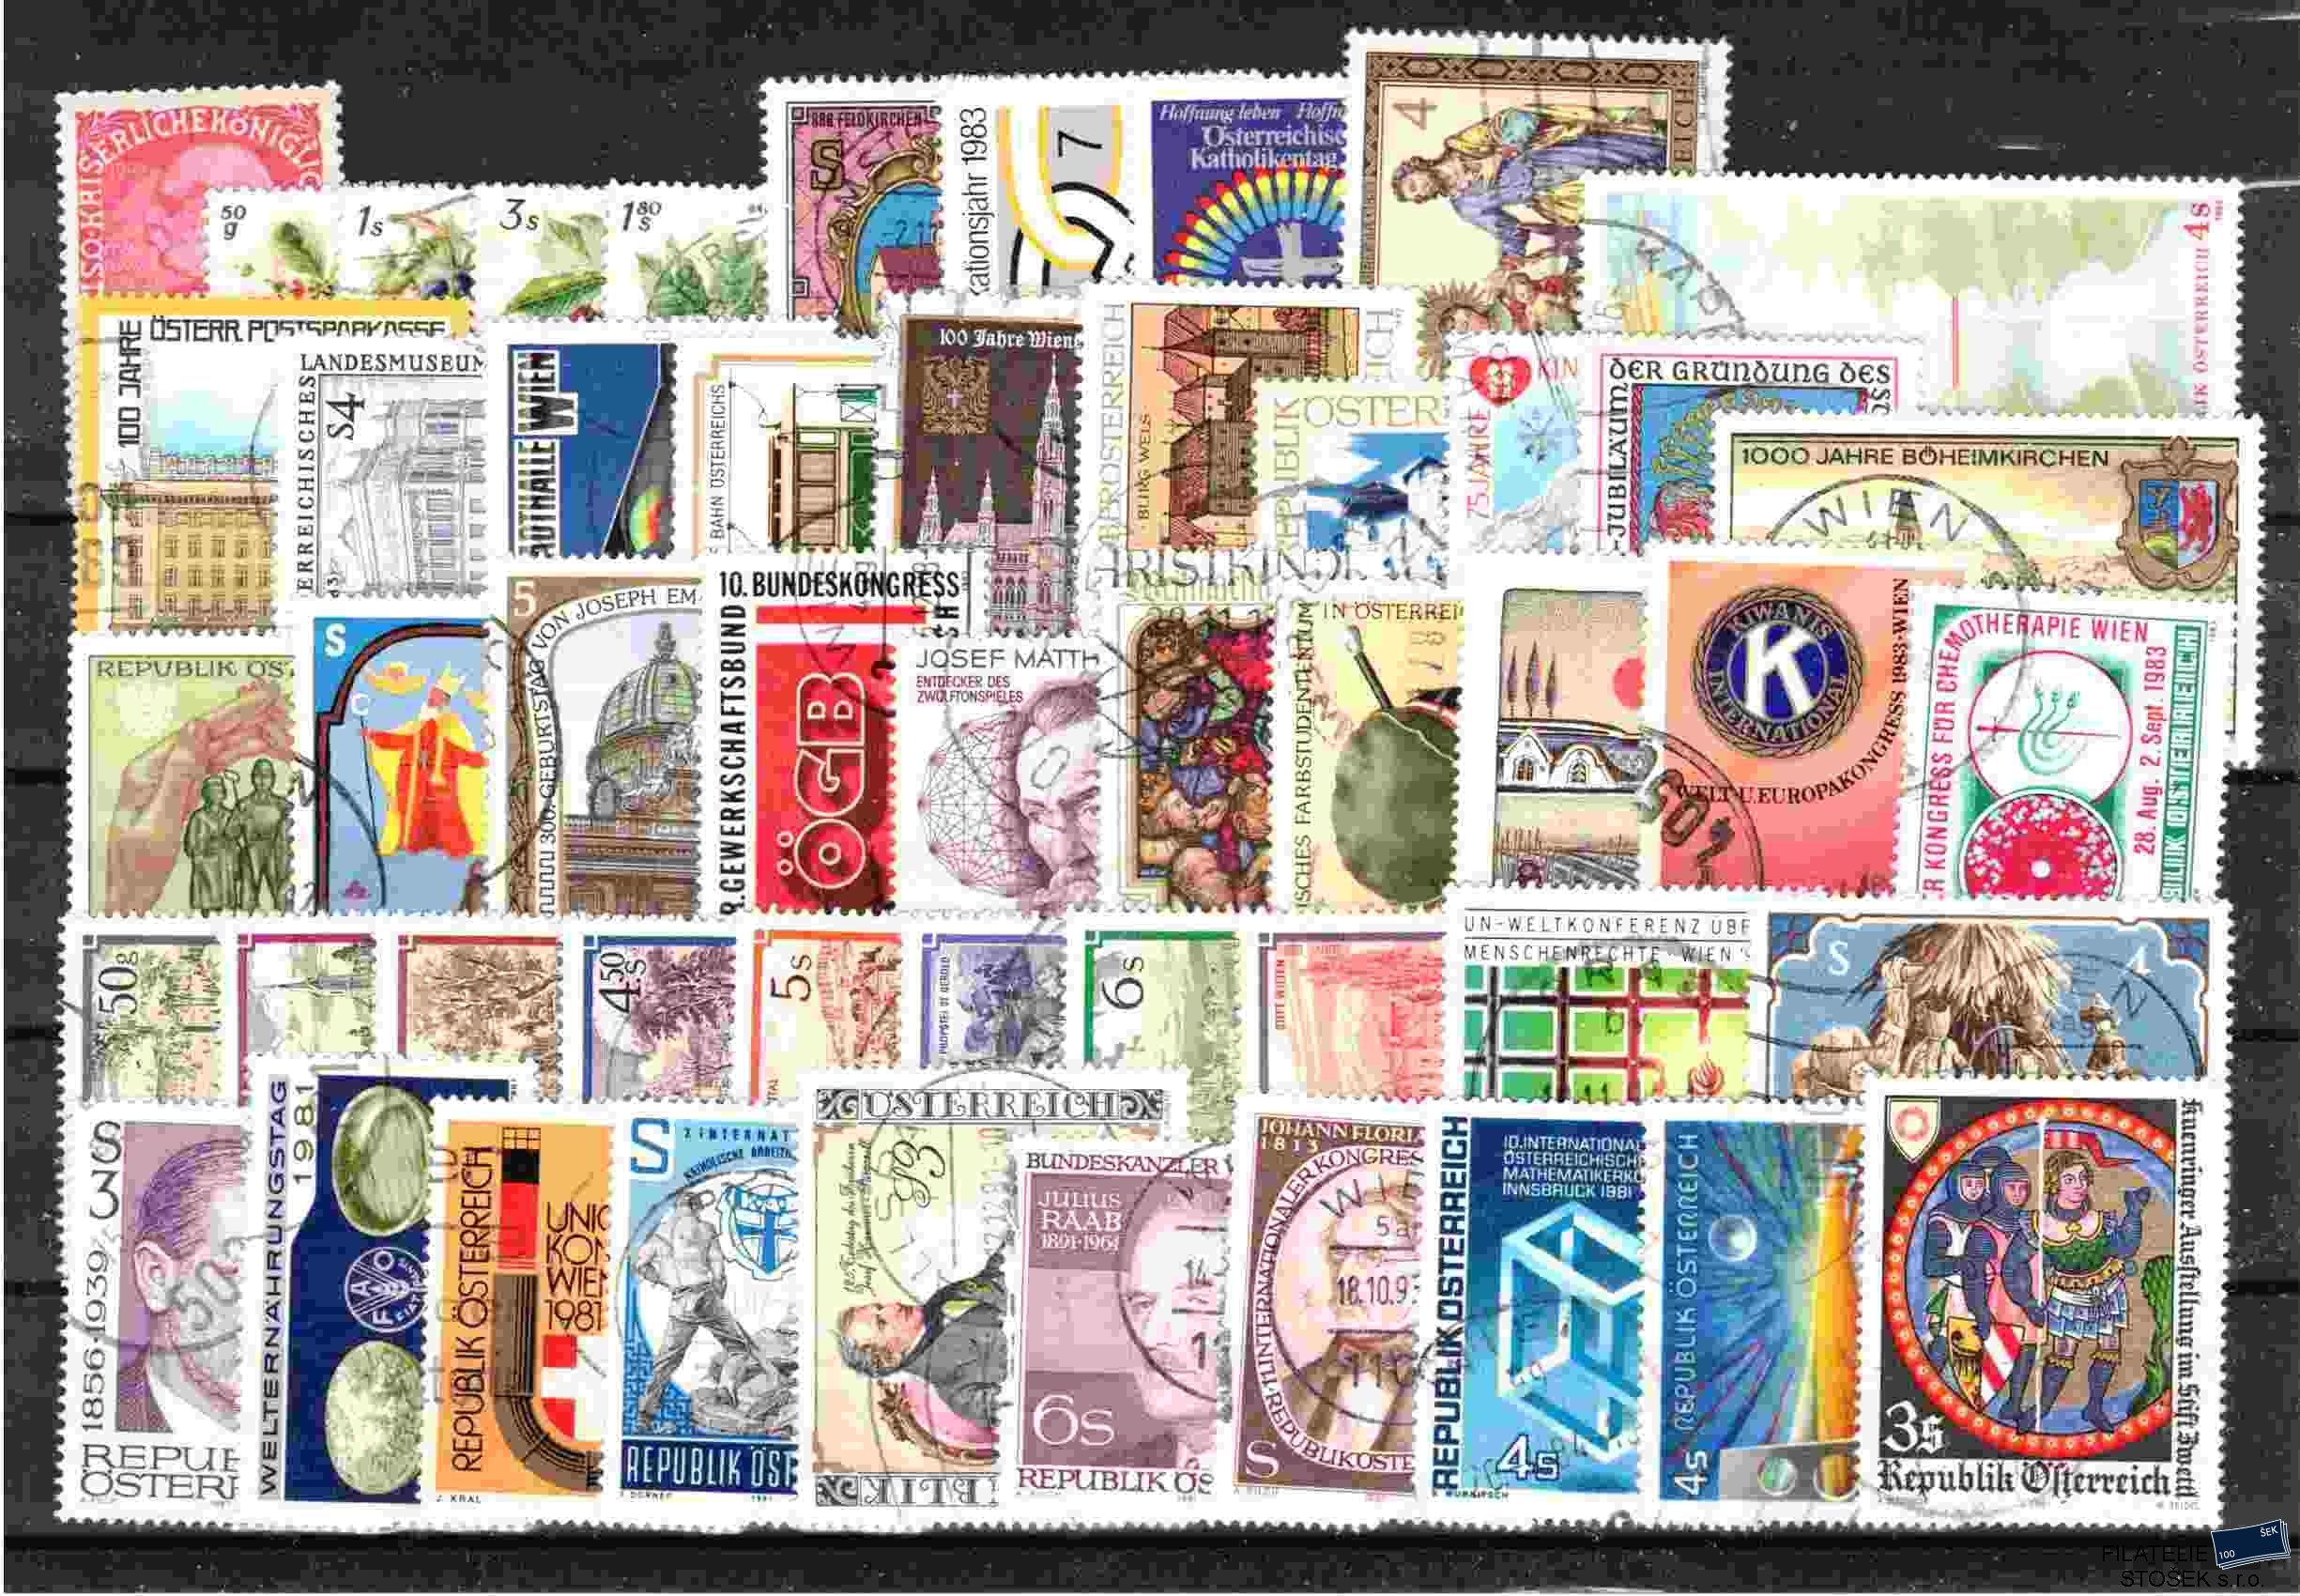 Rakousko známky - sestava známek na kartičce A 5